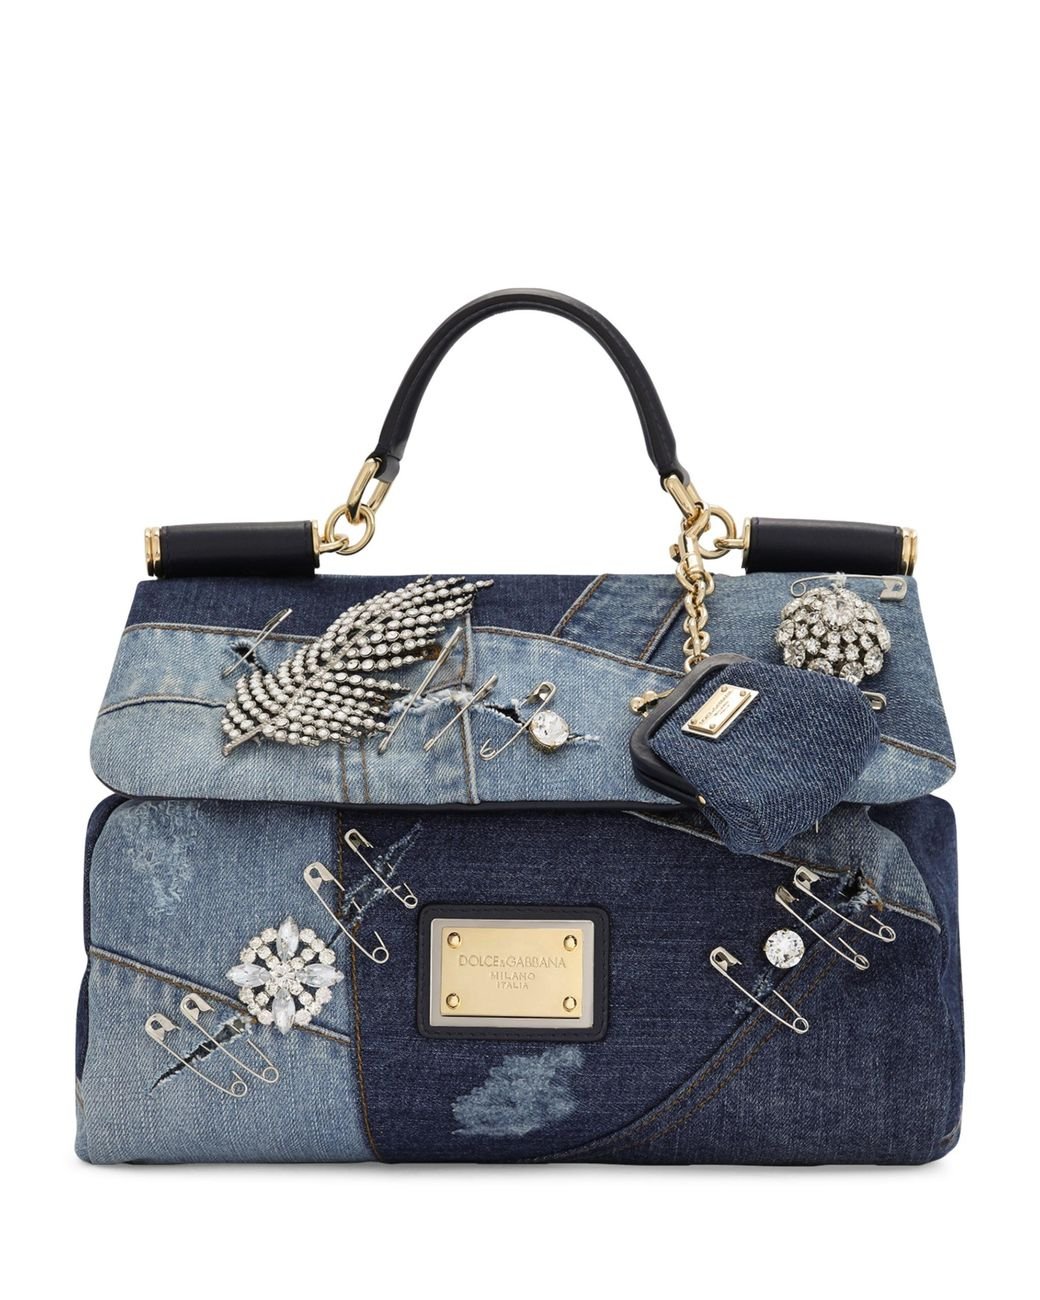 Dolce & Gabbana Patchwork Embellished Sicily Top-handle Bag in Blue | Lyst